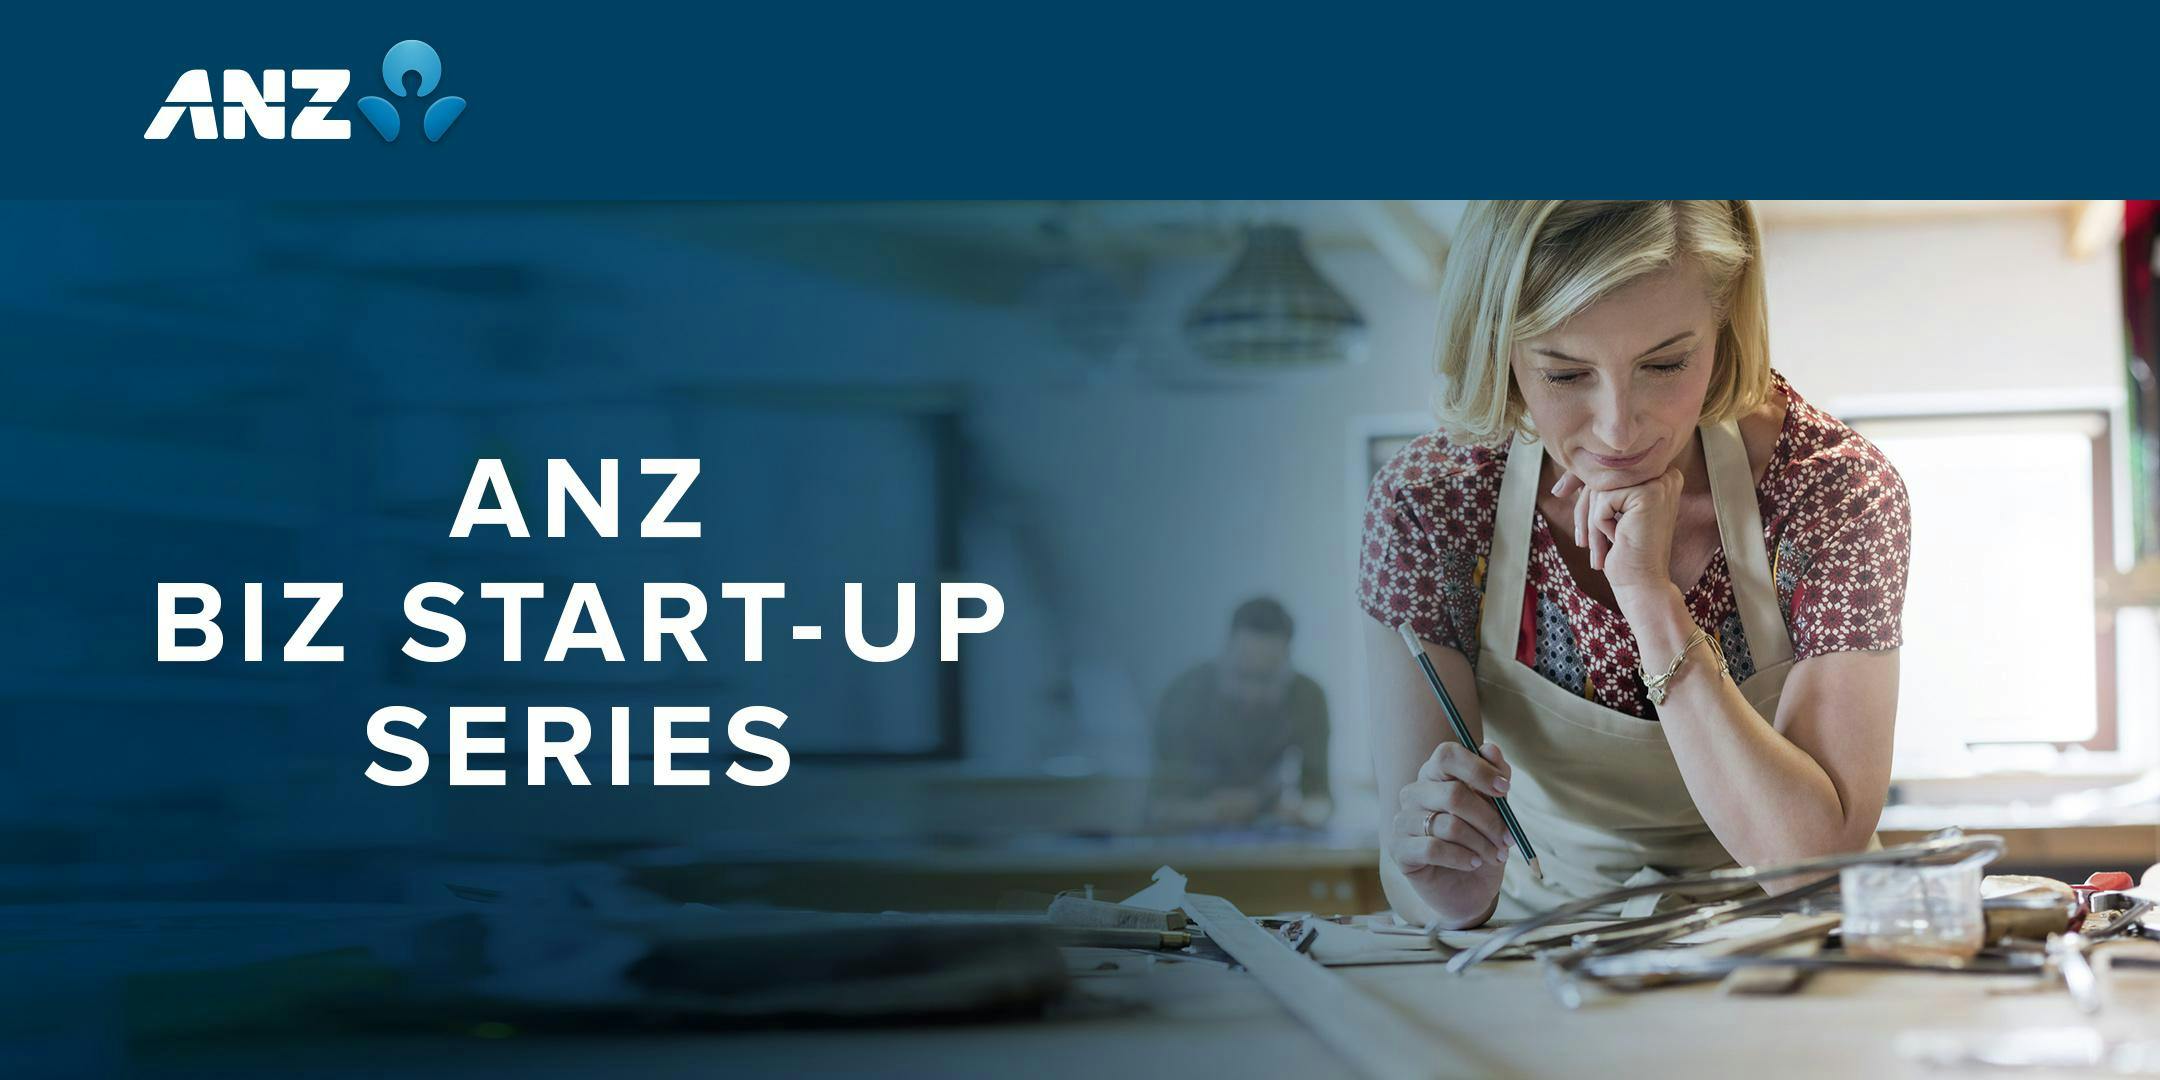 ANZ Biz Start-up Series, Christchurch